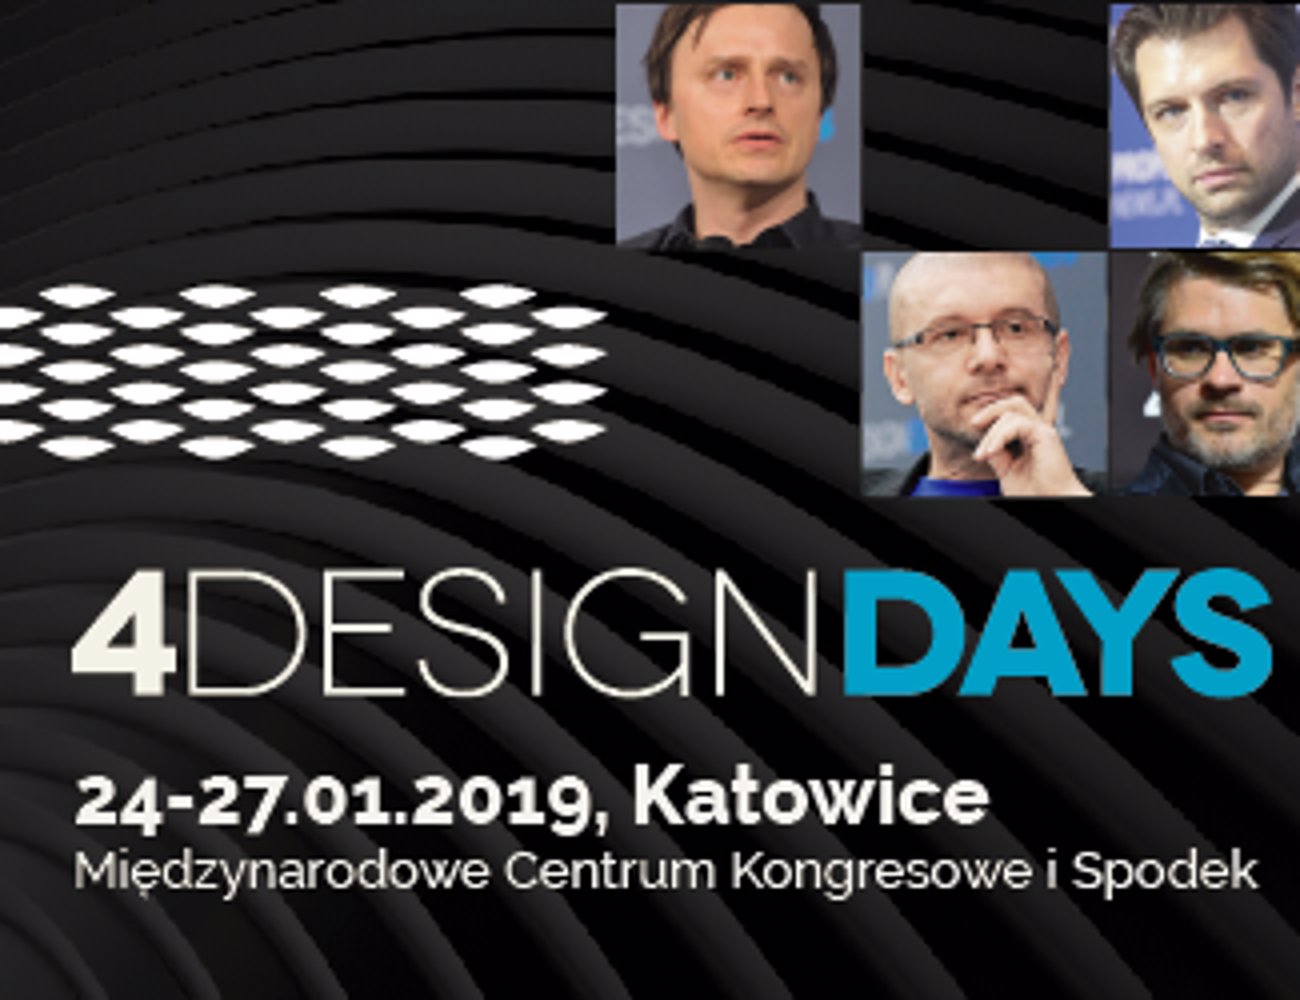 Co inspiruje i kreuje światowe trendy w architekturze i designie? 
Odpowiedzi w dniach 24-27 stycznia na 4 Design Days w Katowicach
